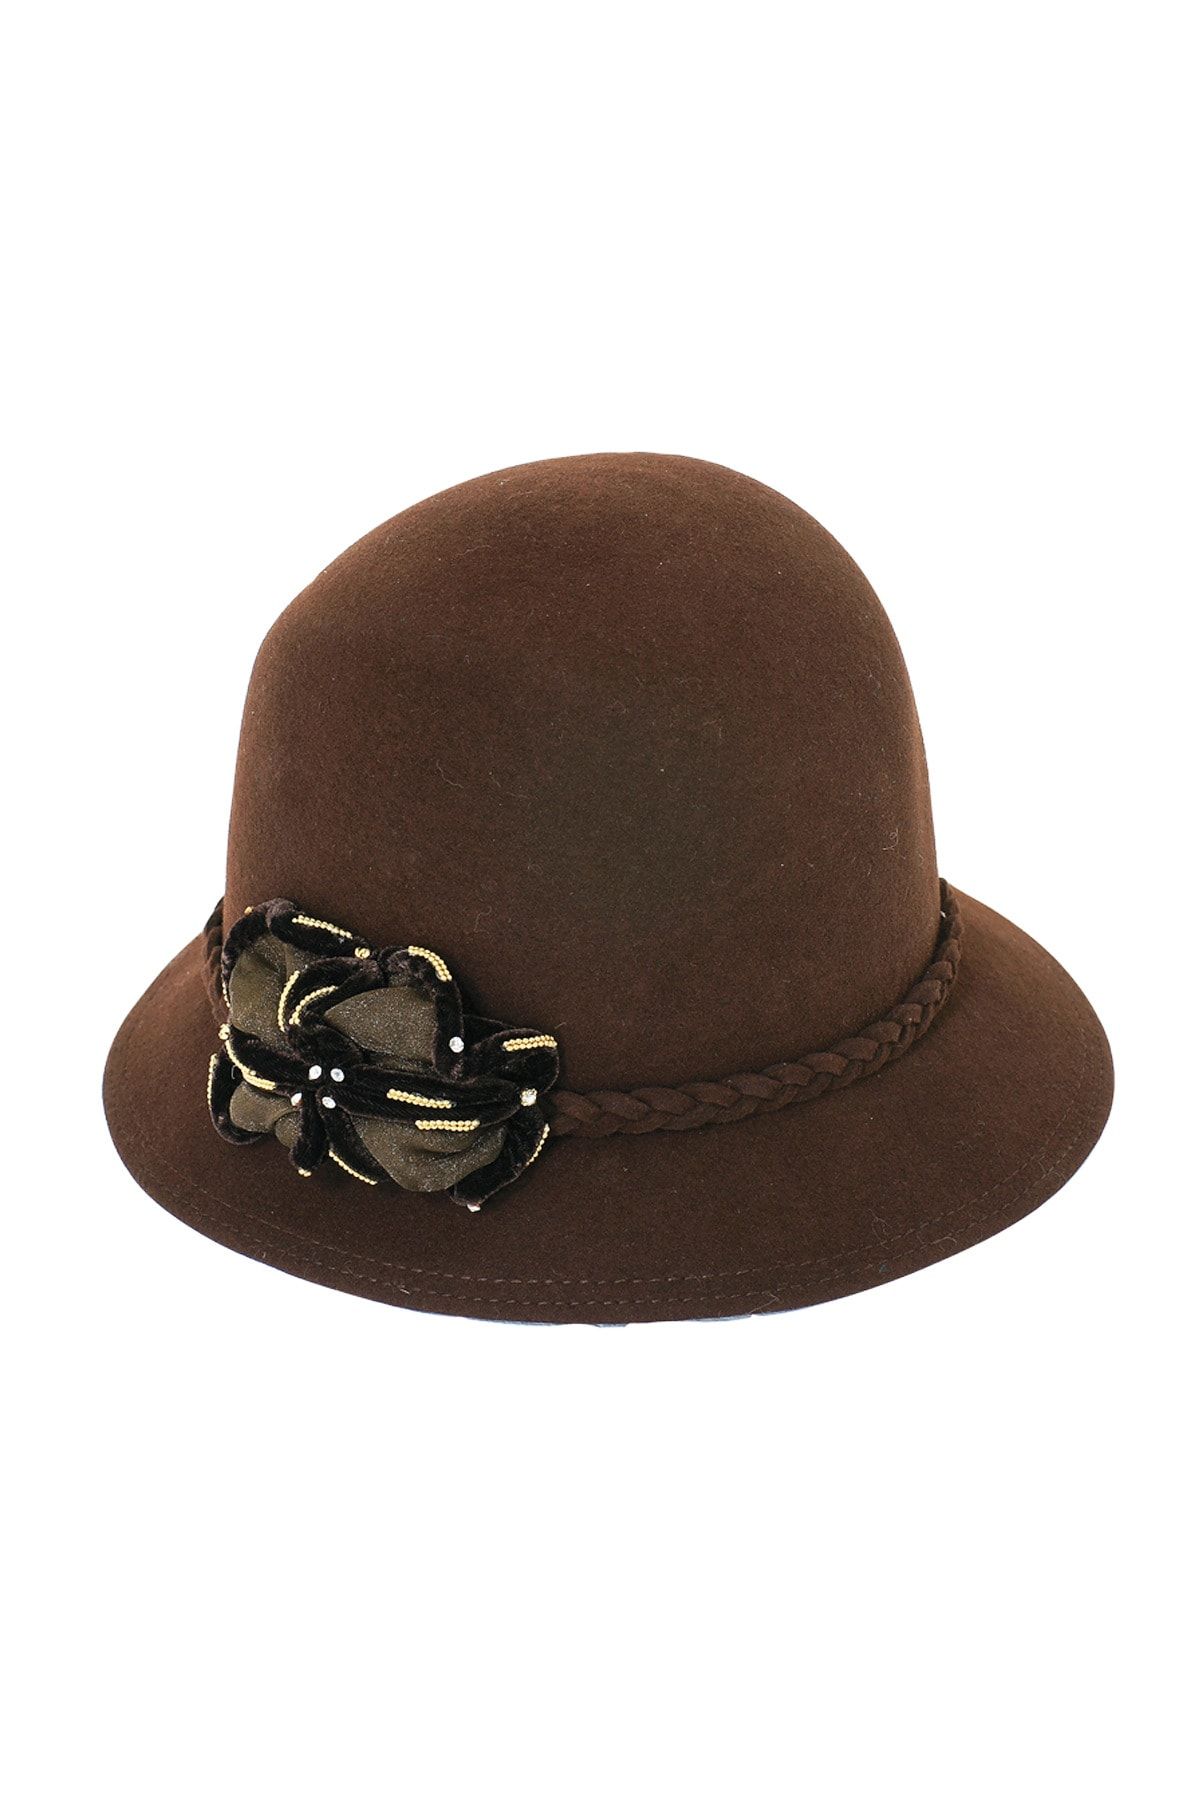 Bay Şapkacı Kadın Kaşe Bermuda Şapka 1072 Kahverengi